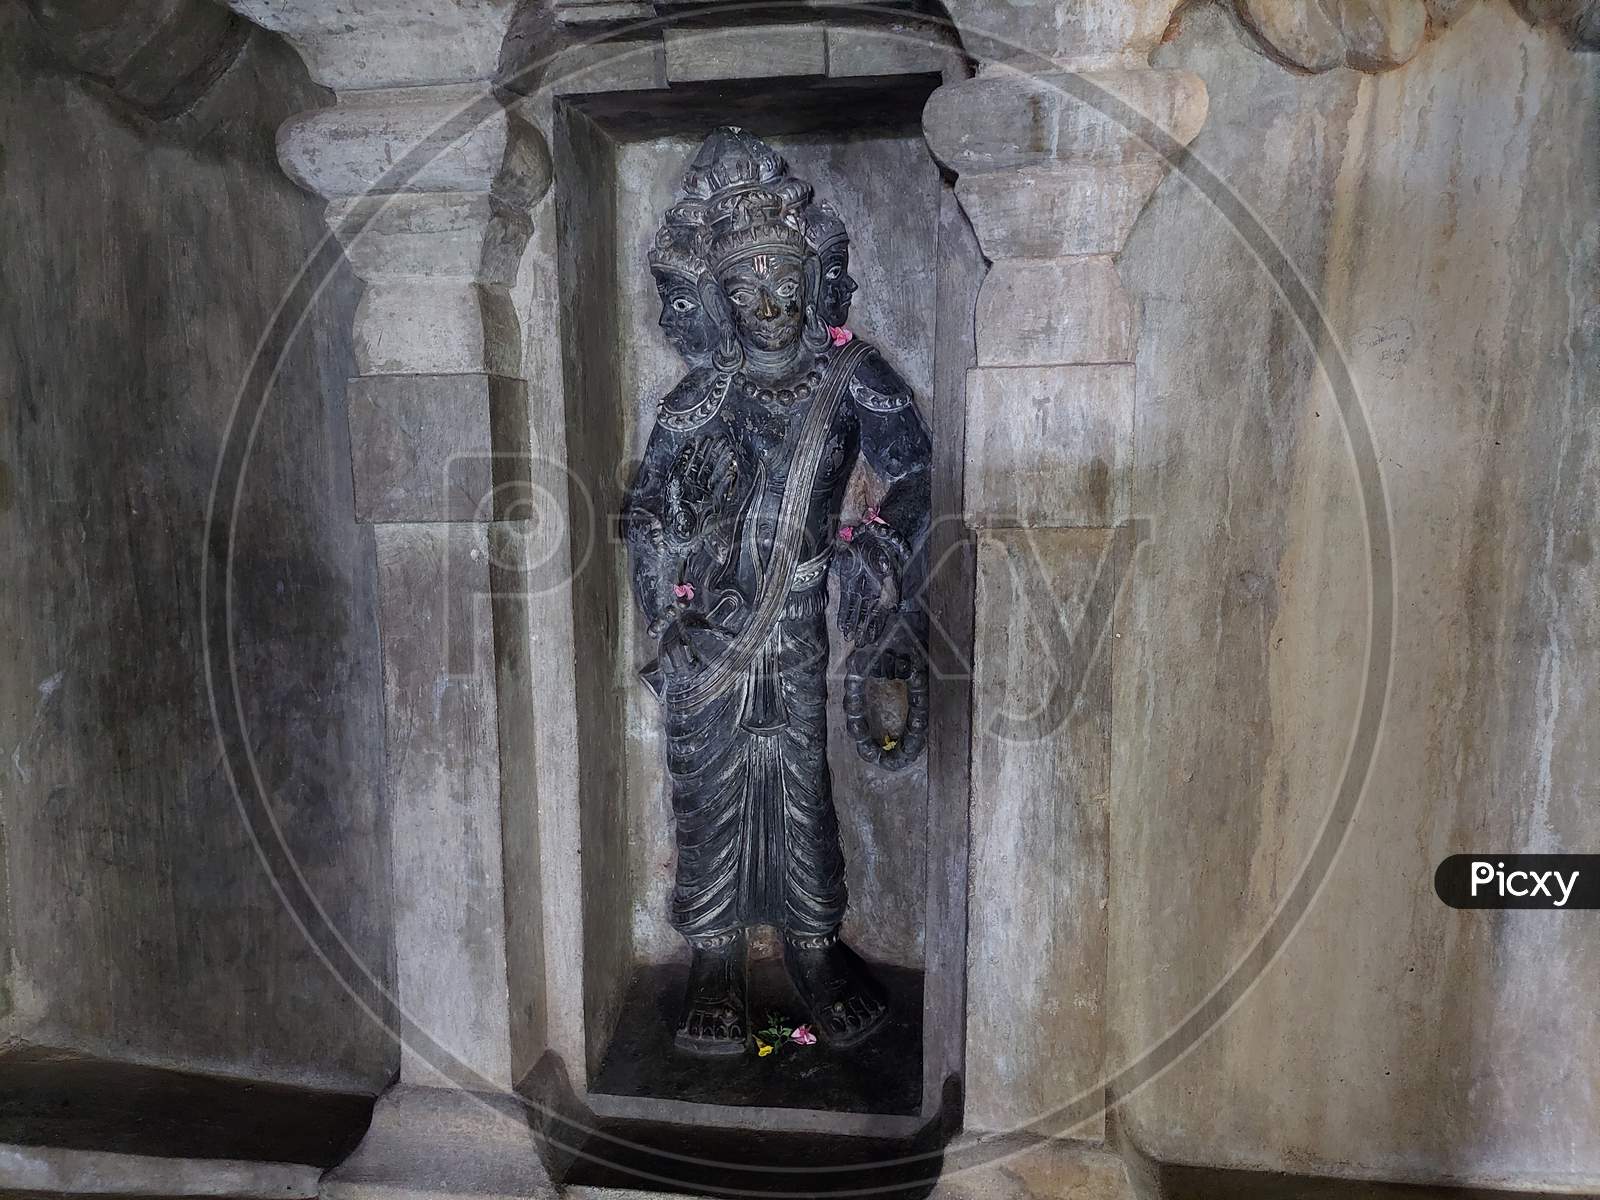 7th century sculptures in undavalli caves in india